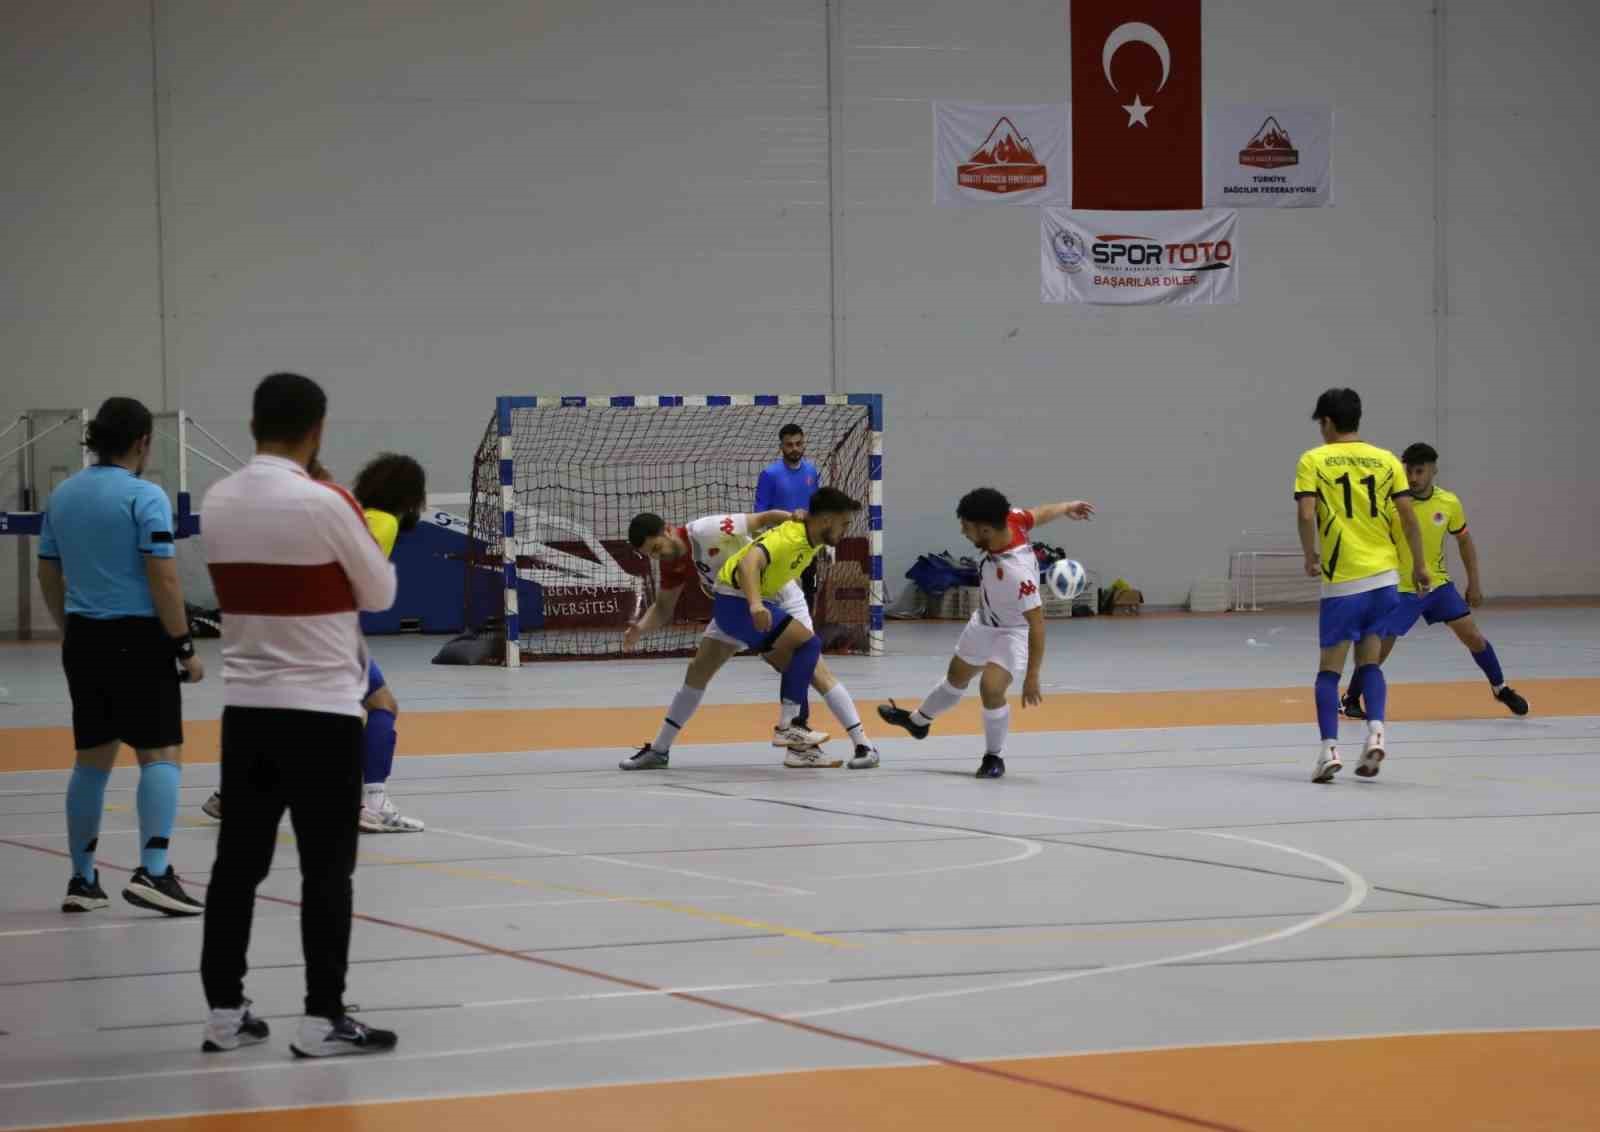 Salon Futbolu Bölgesel Lig Müsabakaları Nevşehir’de başladı
